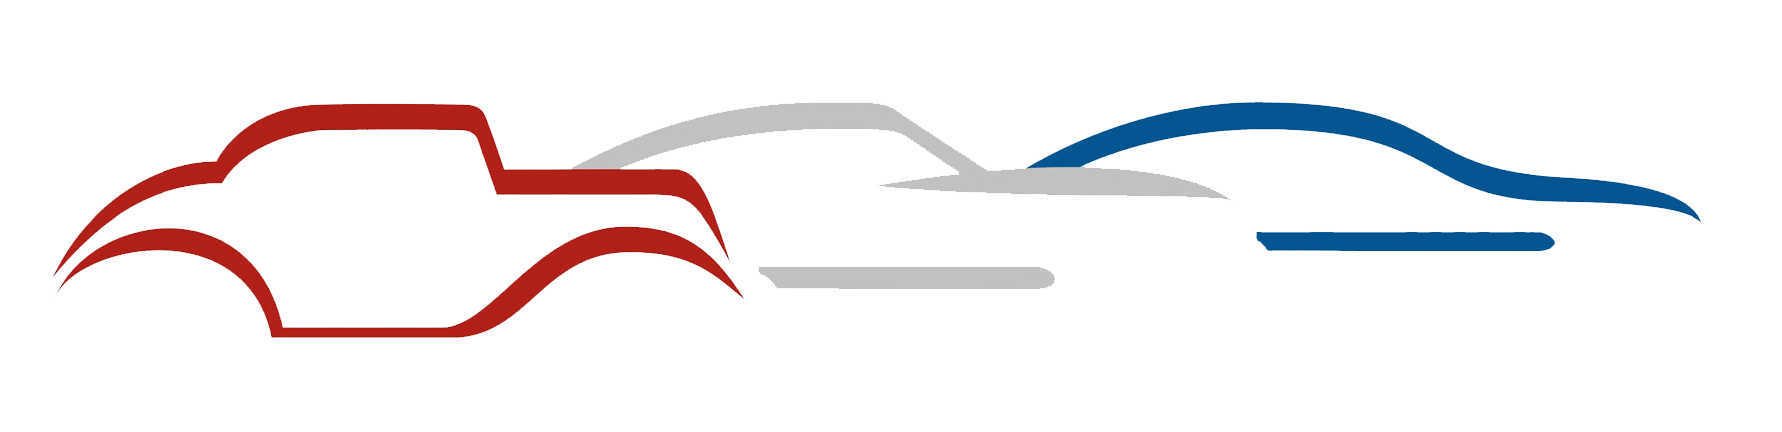 AHPS Car Logo Clear